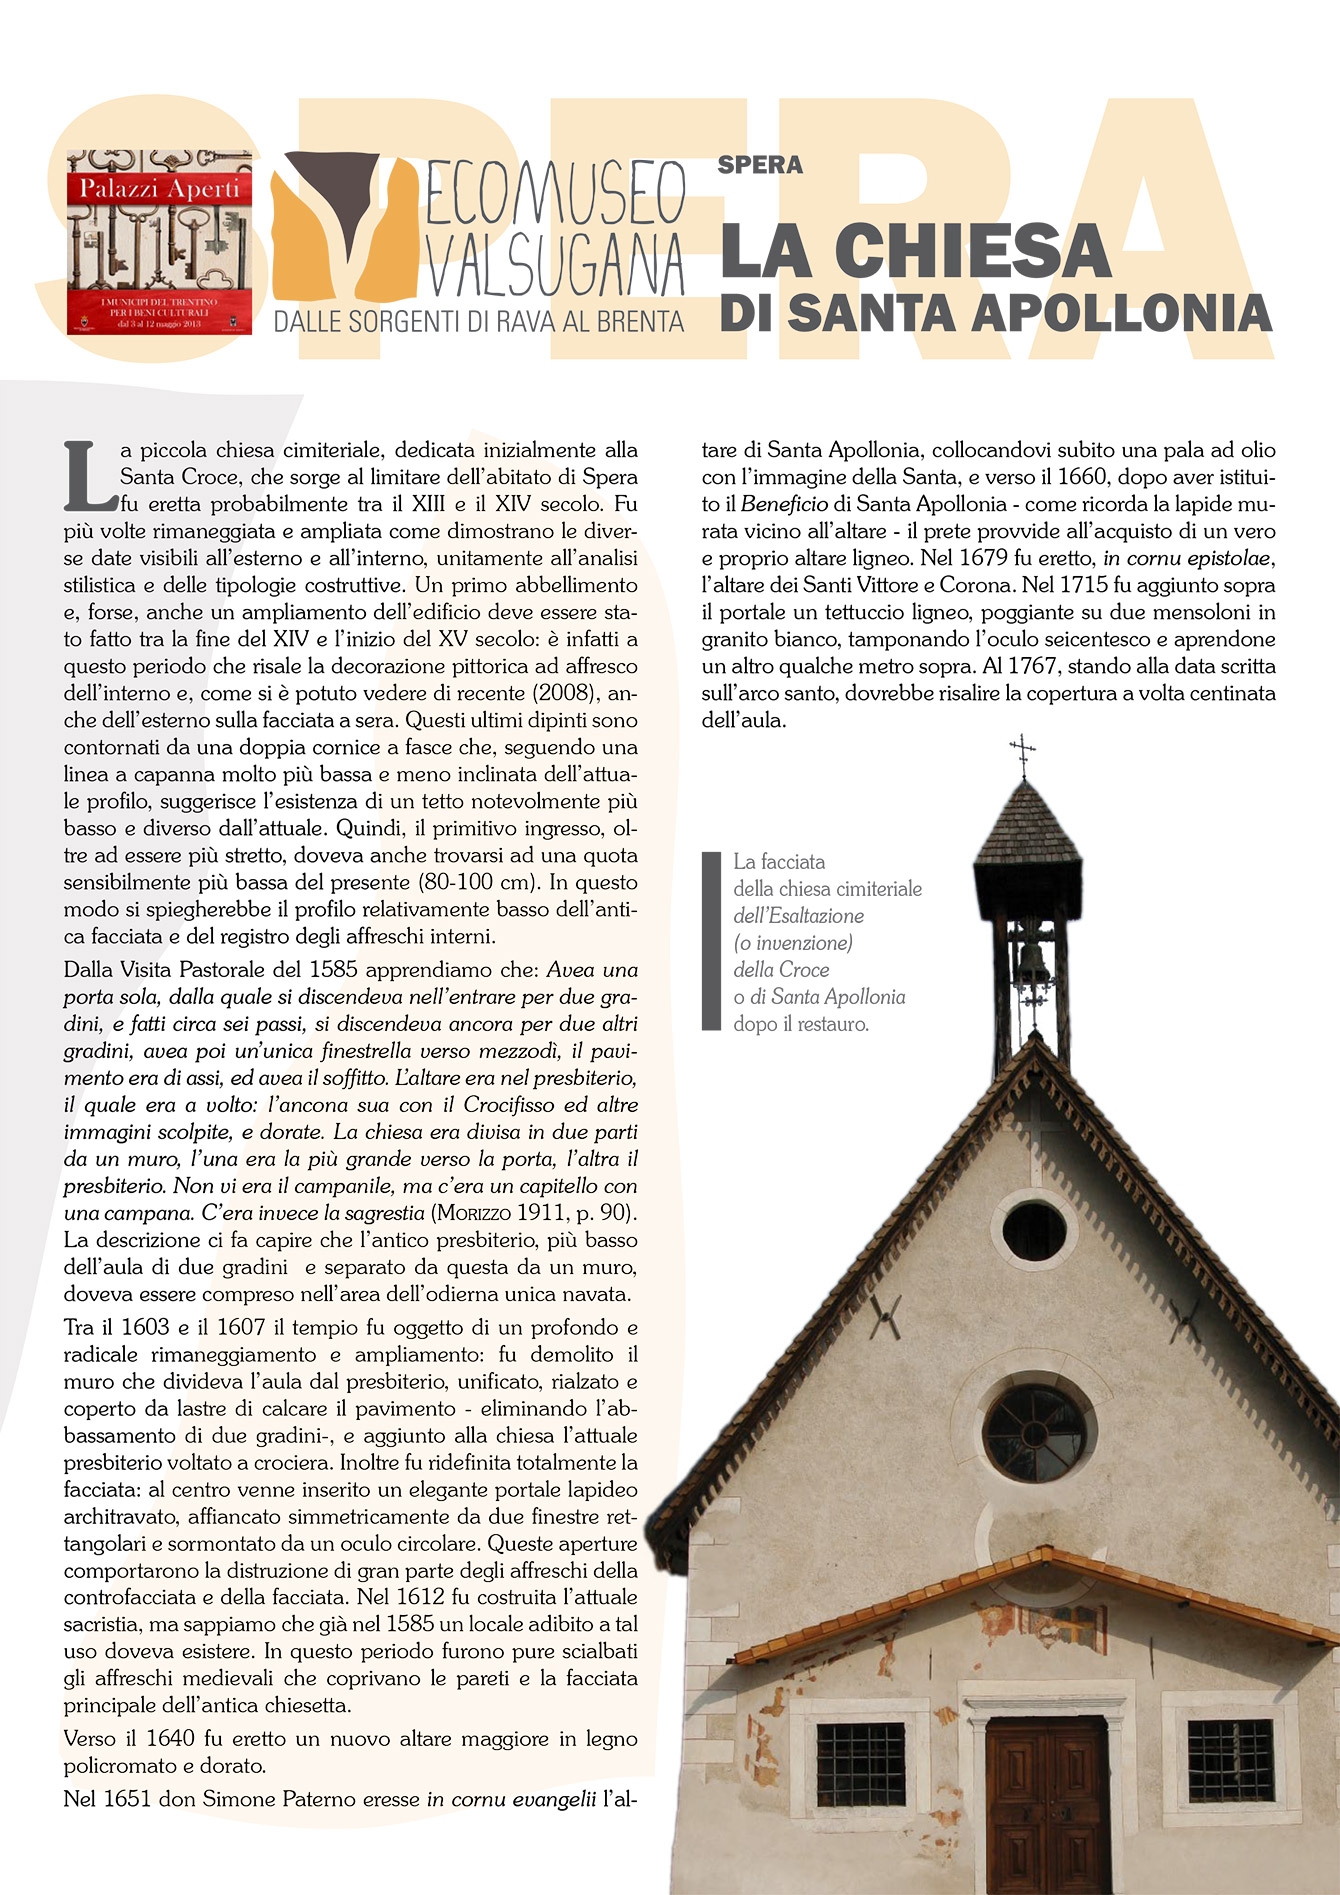 Spera: la chiesa di Santa Apollonia